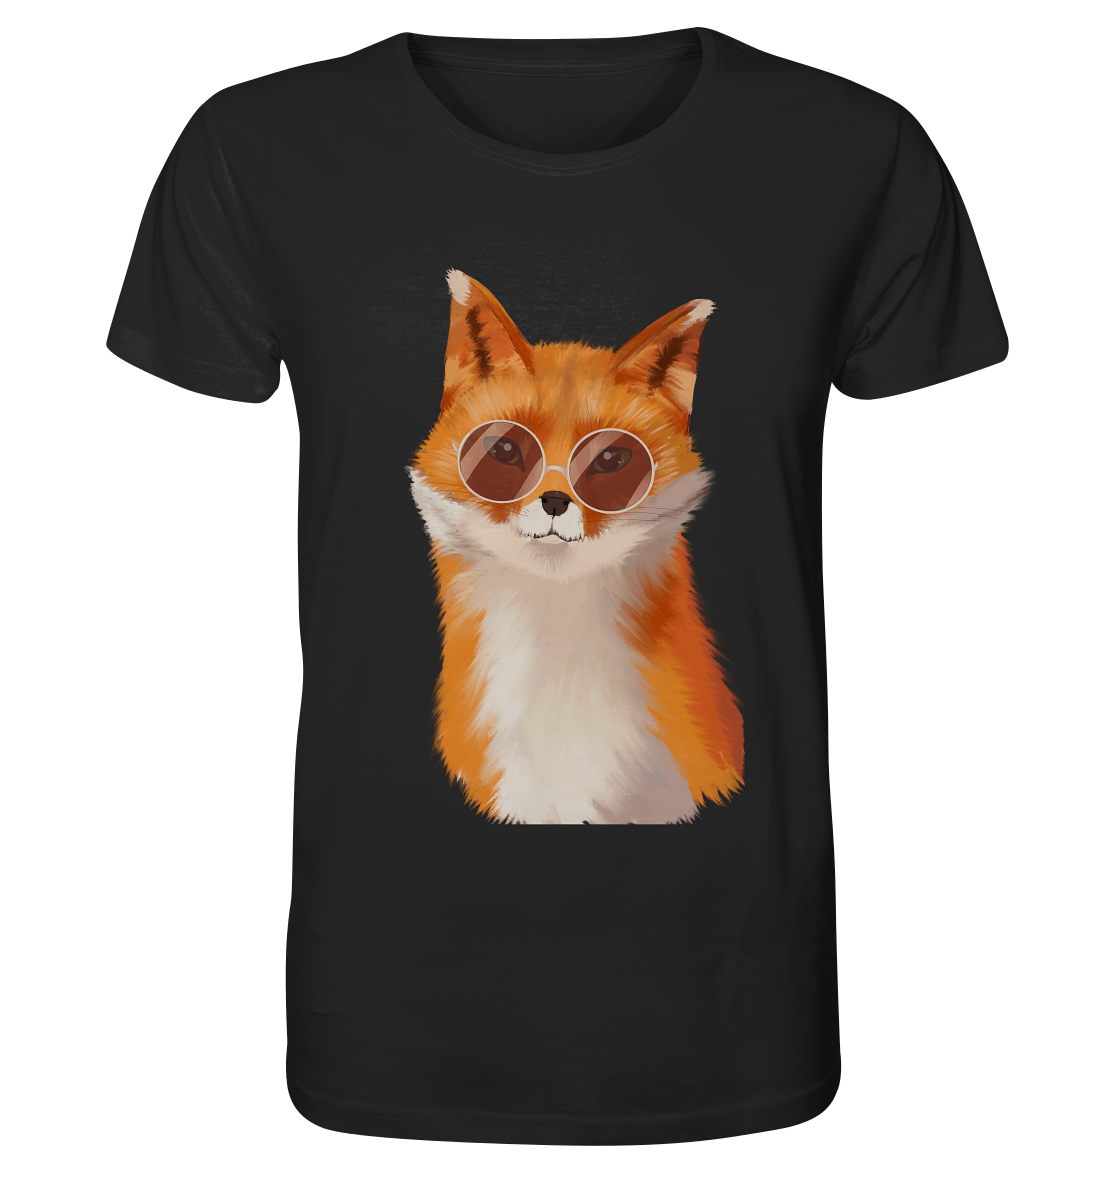 Herren T-Shirt "Fuchs" in schwarz mit Fuchs Print